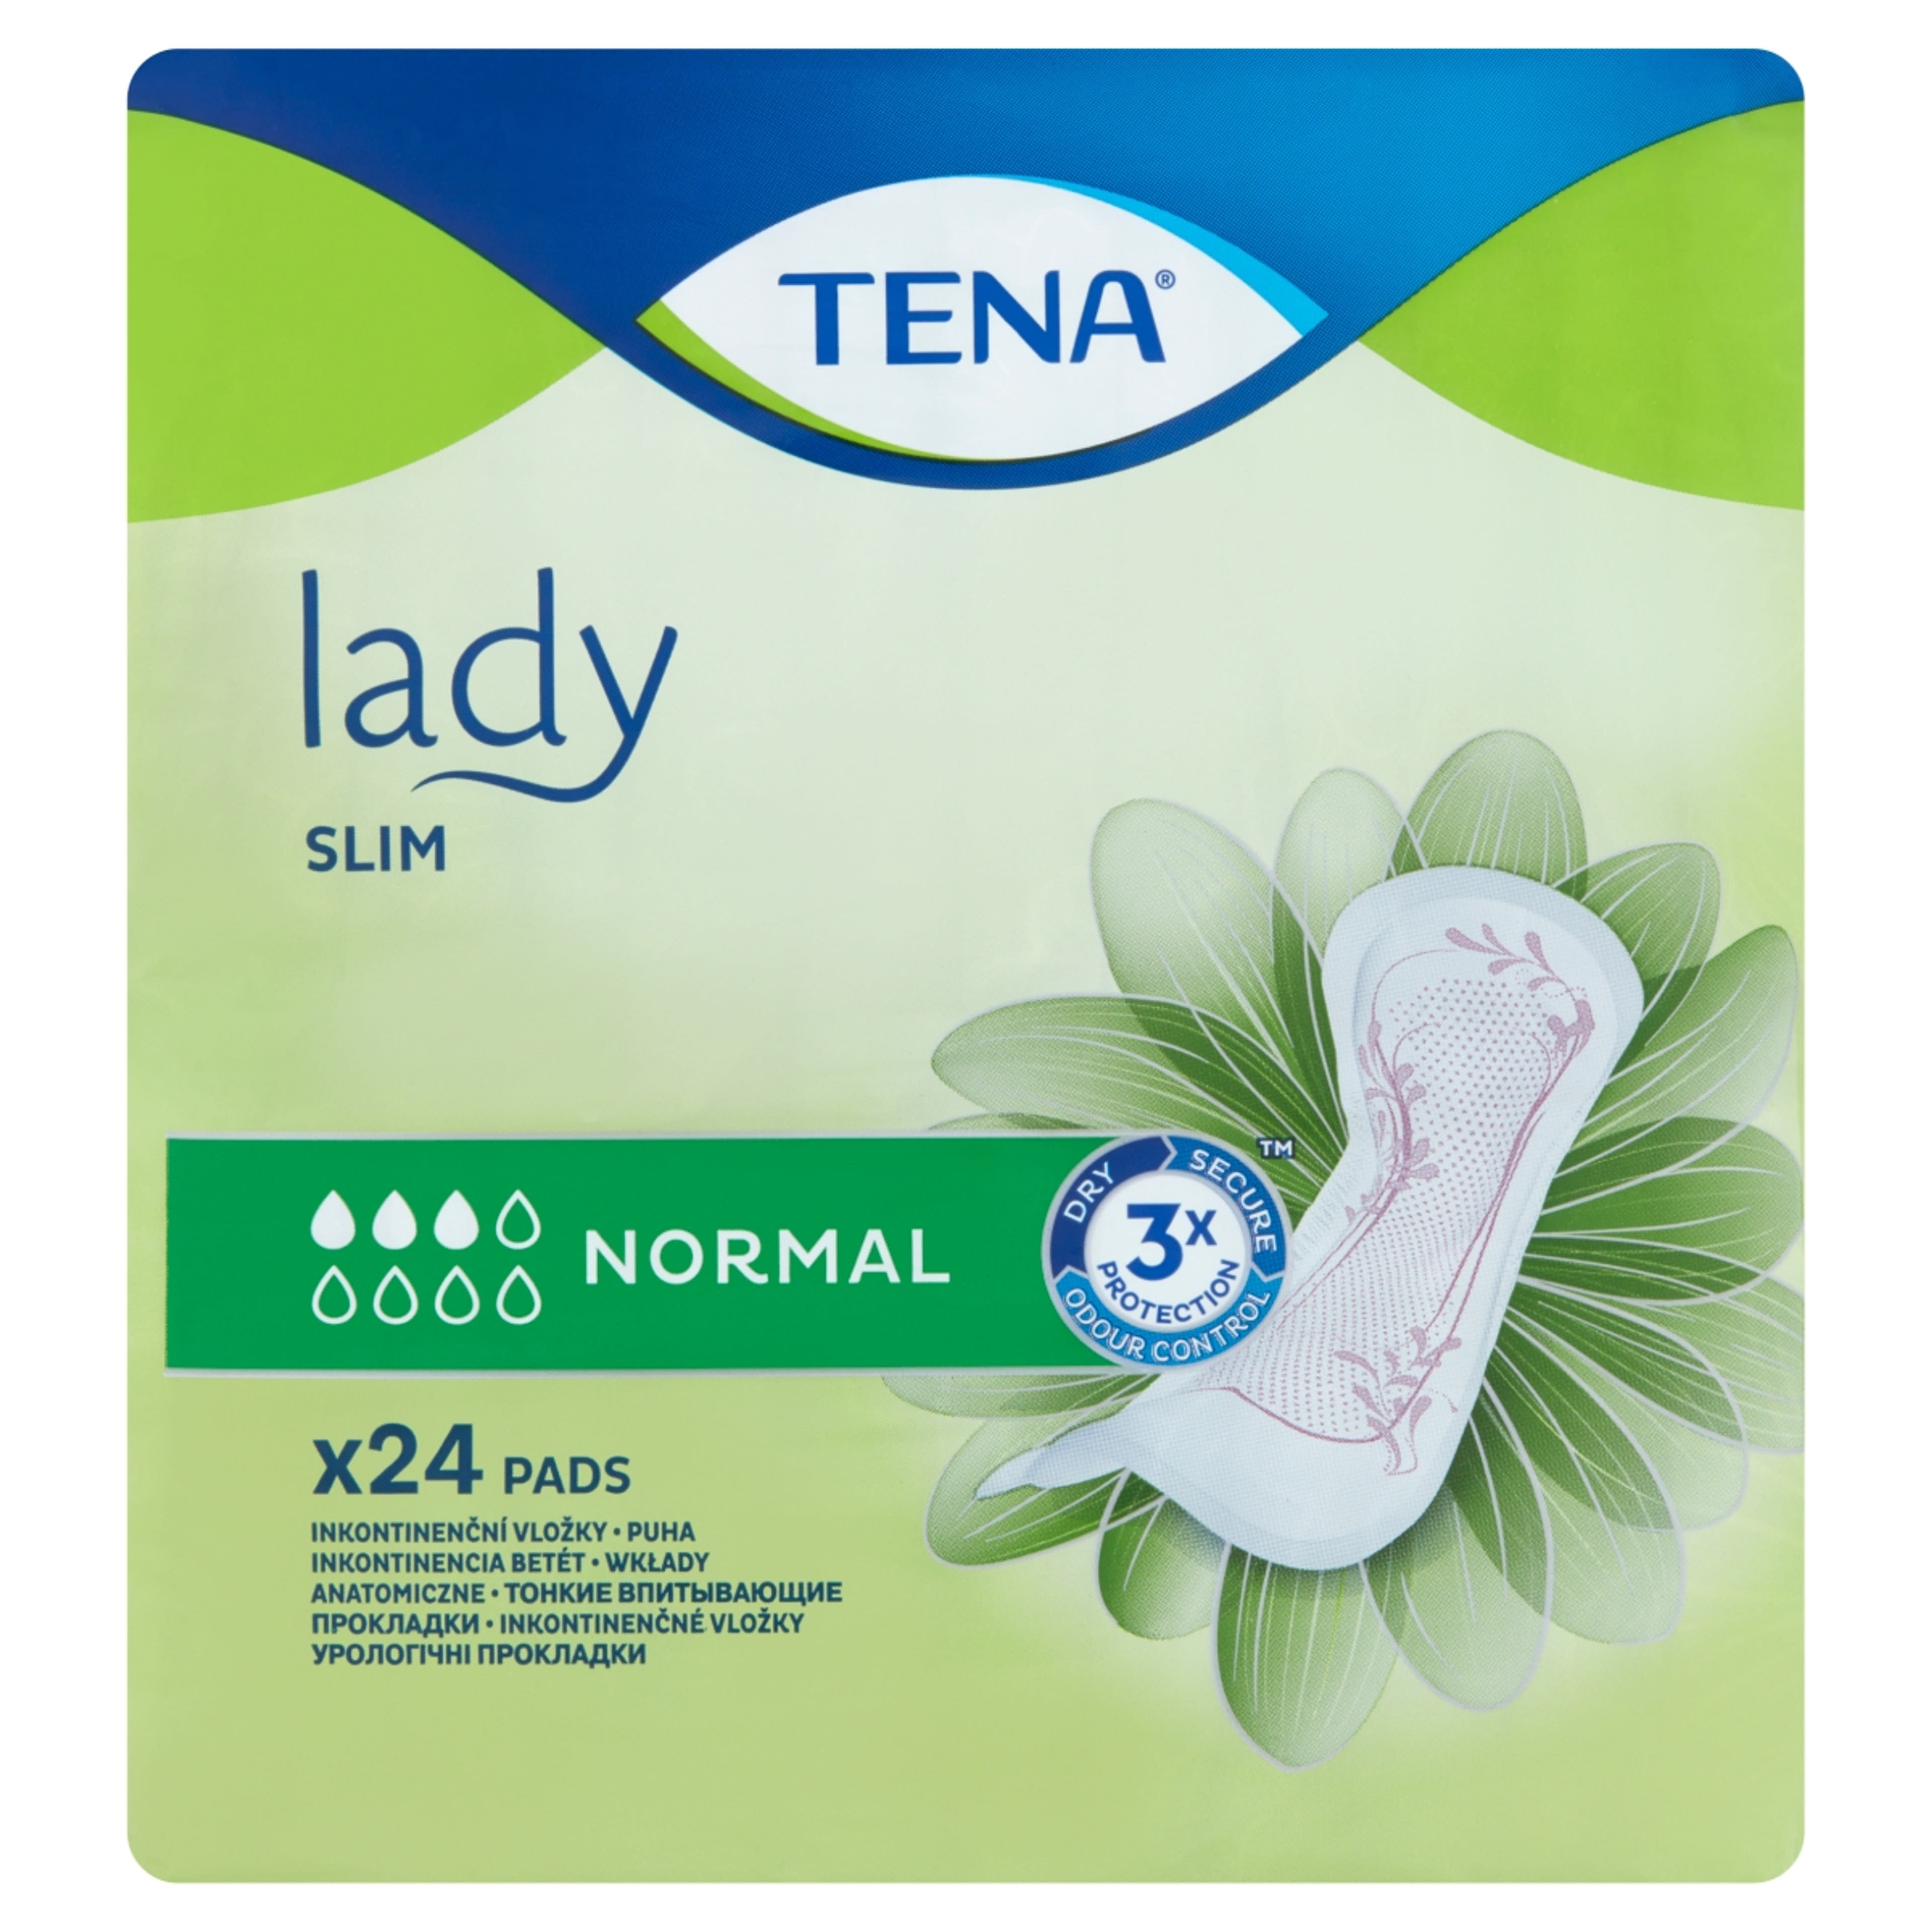 Tena lady slim normál inkontinencia betét - 24 db